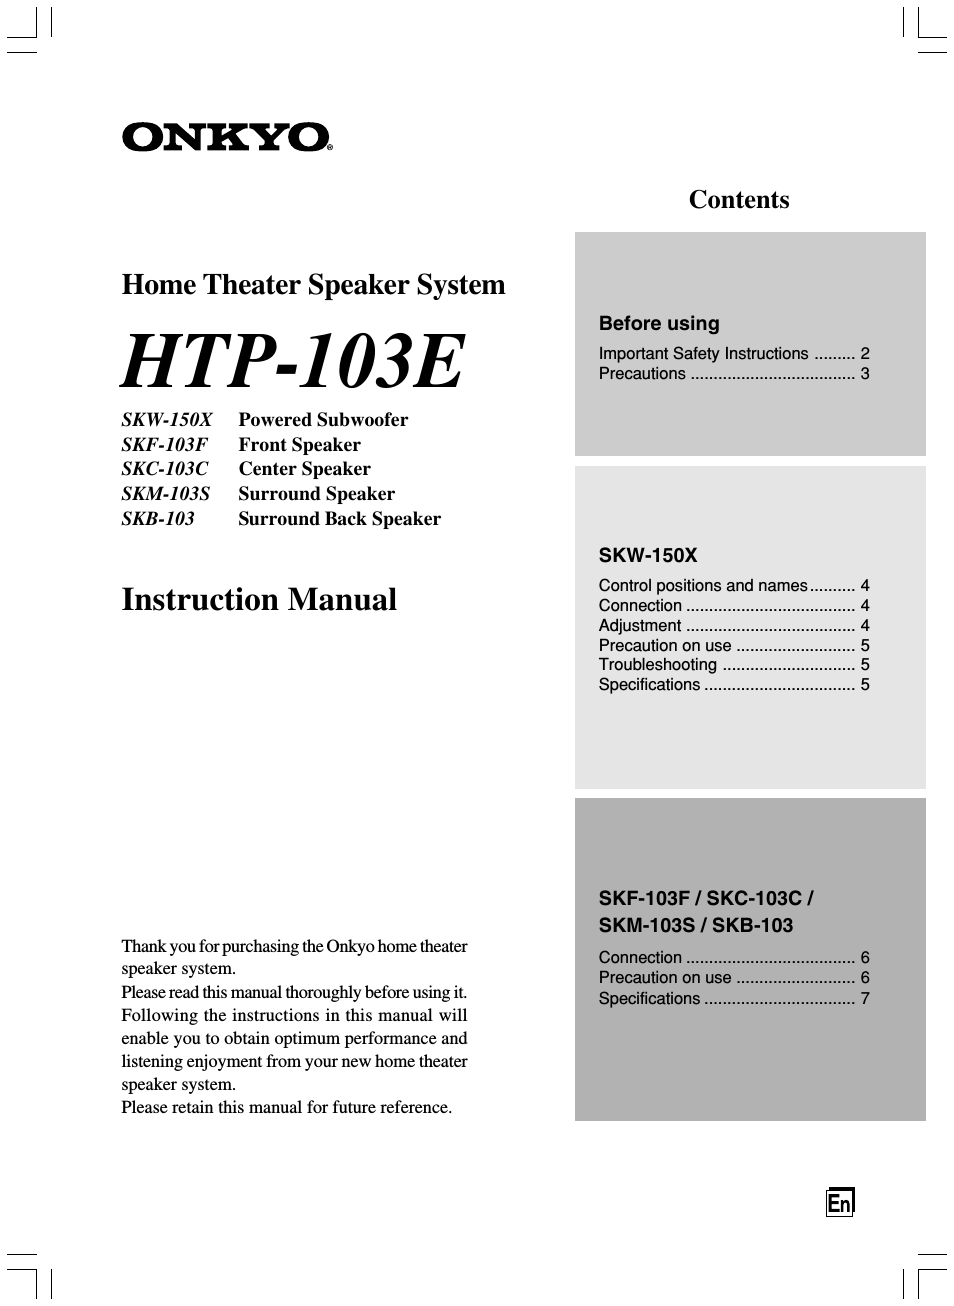 HTP-103E